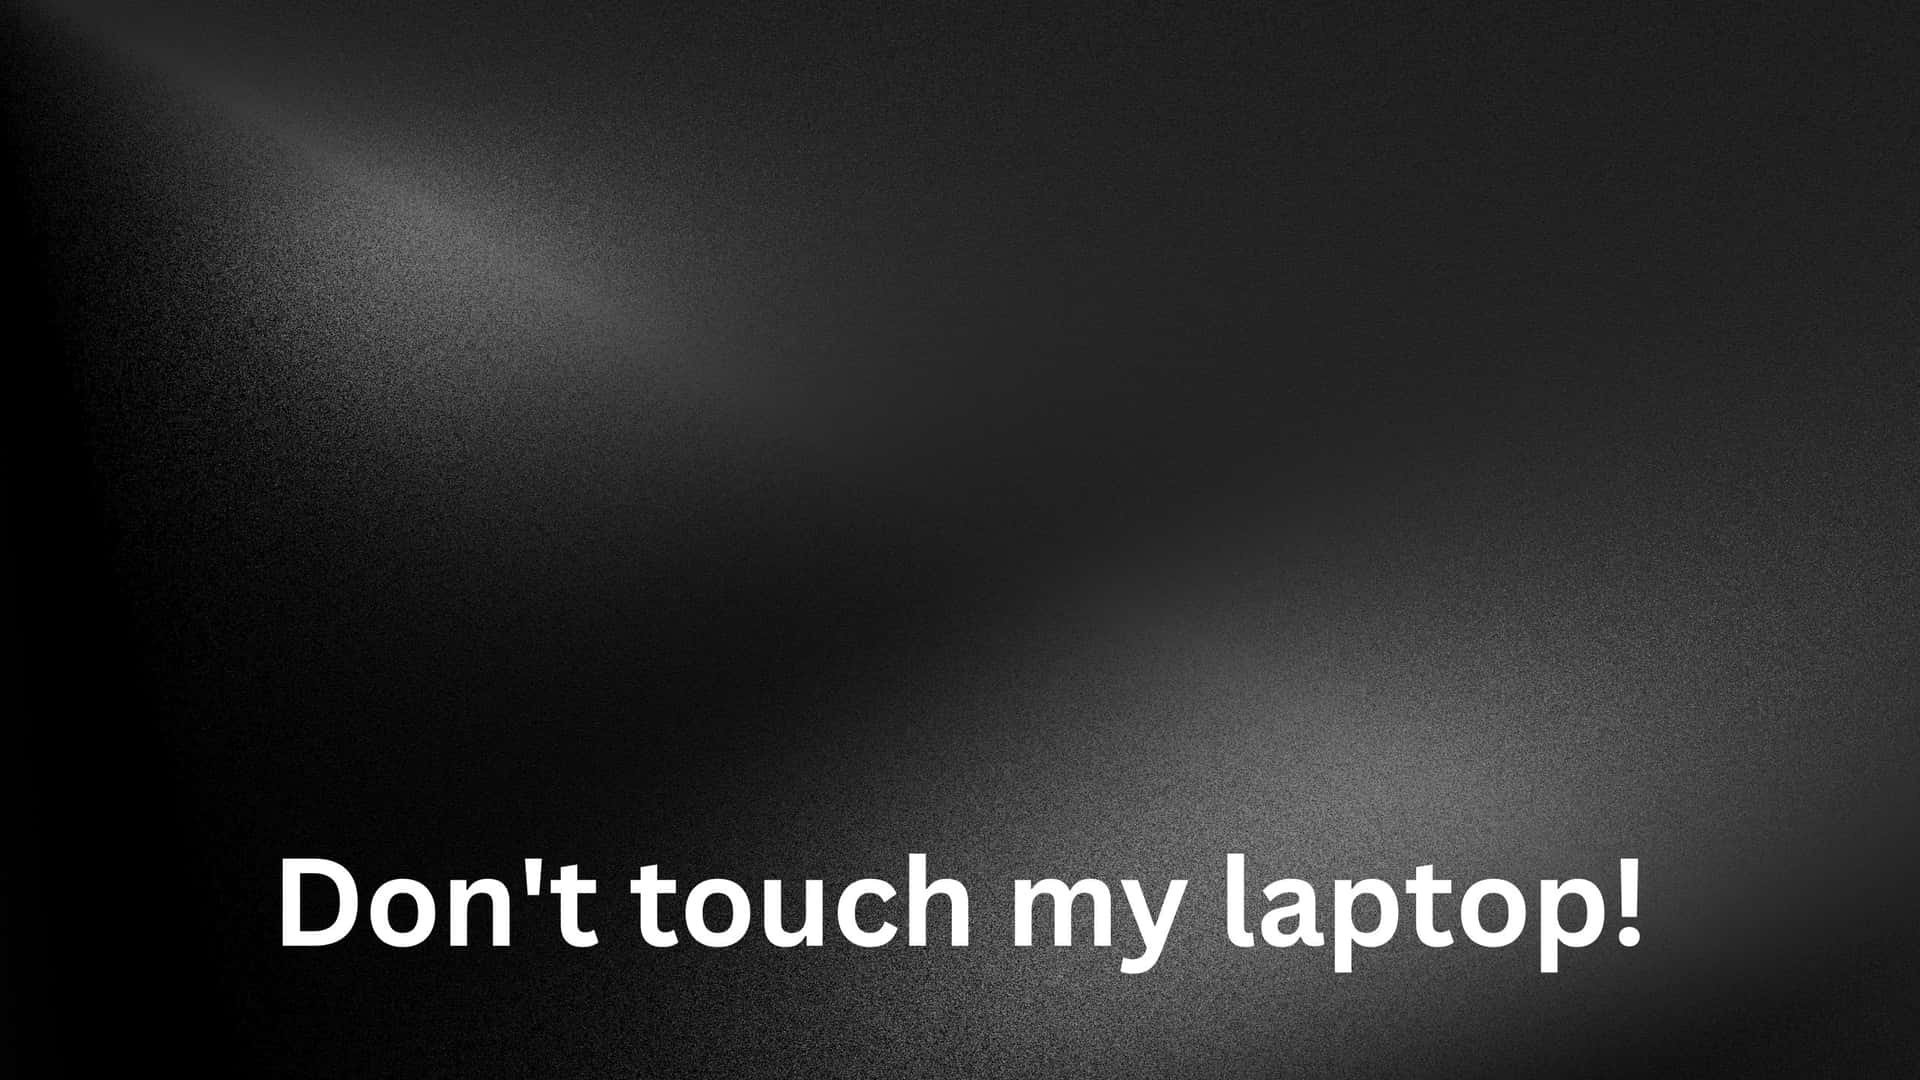 Sfondosfocato In Bianco E Nero, Non Toccare Il Mio Laptop. Sfondo